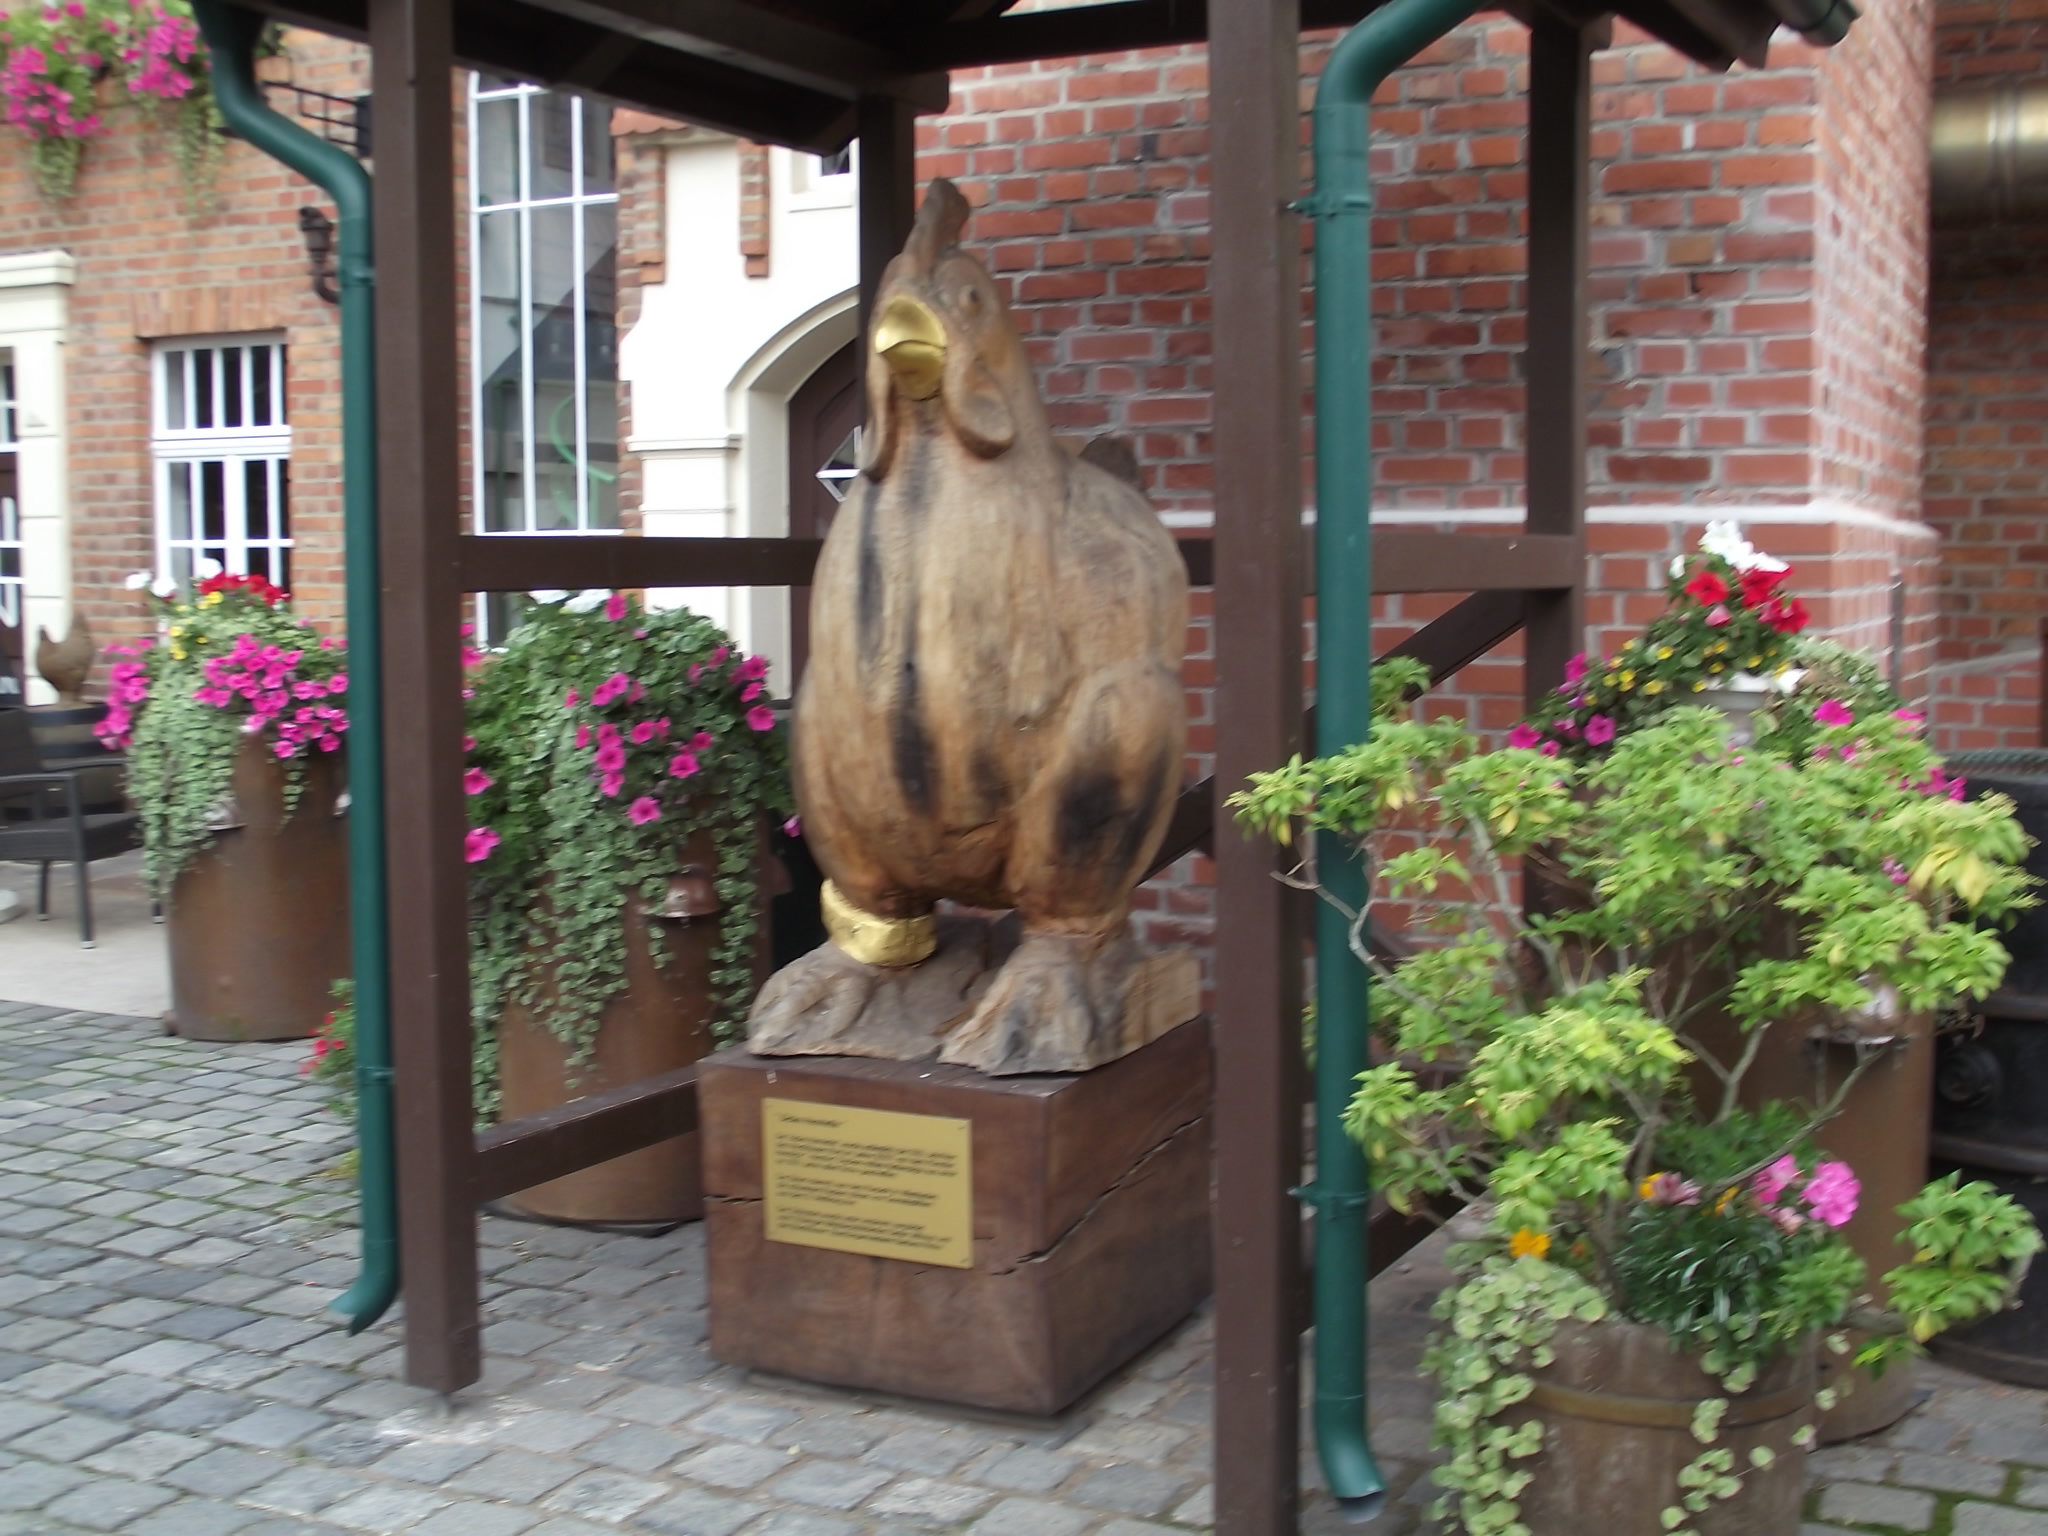 Echter Nordhäuser Traditionsbrennerei in Nordhausen - Die Henne Henriette aus einer 300 Jahre alten Eiche vom Kurpark in Wiesbaden